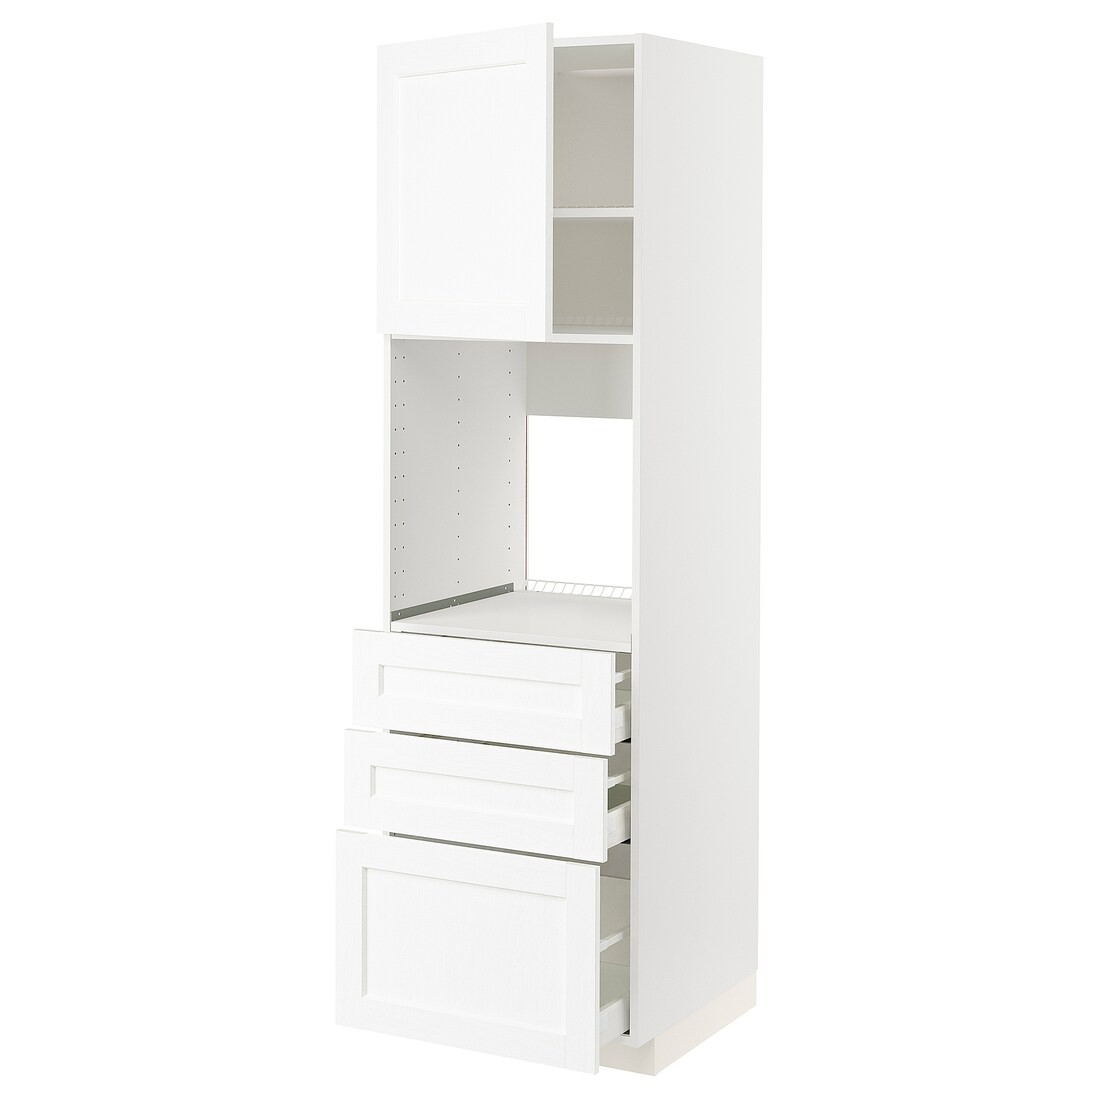 METOD МЕТОД / MAXIMERA МАКСИМЕРА Высокий шкаф для духовки, белый Enköping / белый имитация дерева, 60x60x200 см